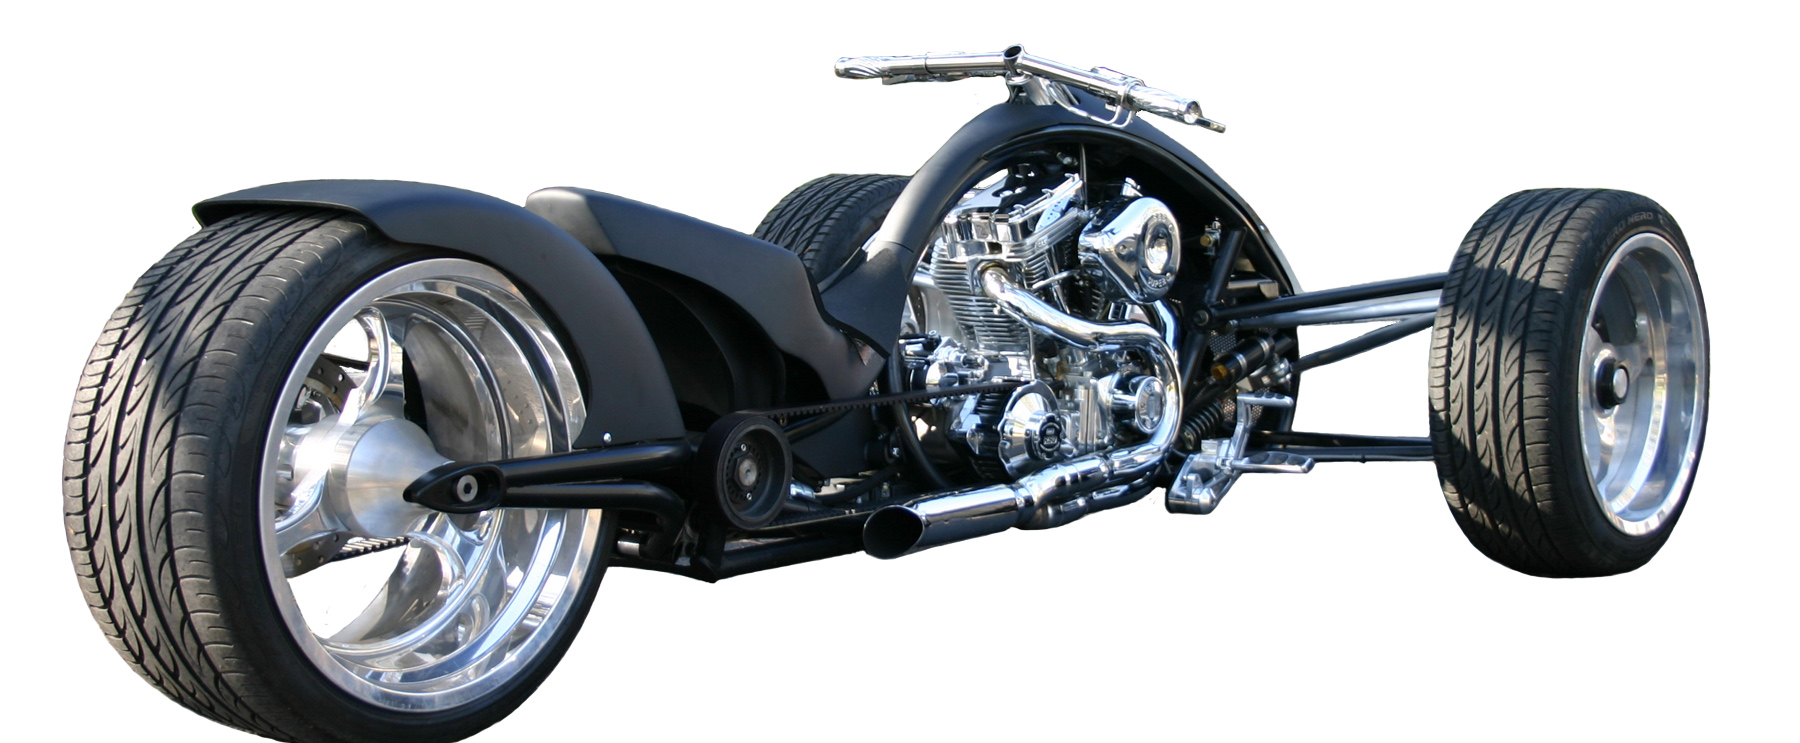 3-Wheel Motorcycle - VisionWorks Engineering